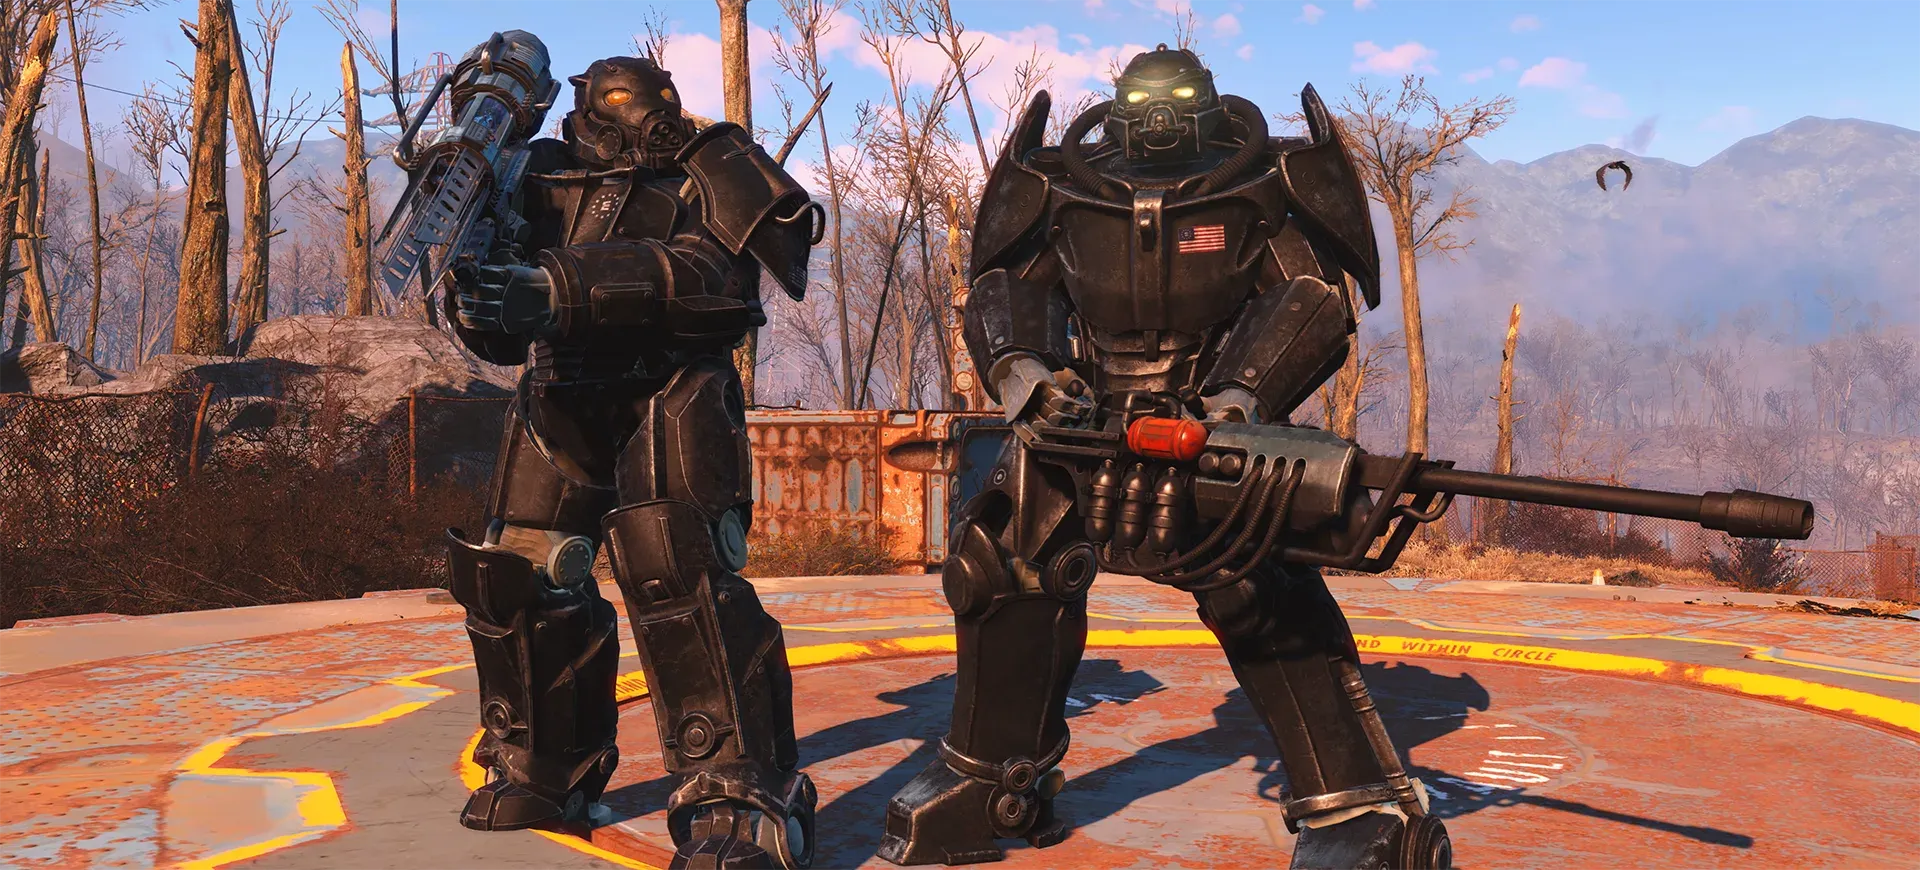 Fallout 4 Next Gen: tutte le novità, le modalità e i nuovi contenuti